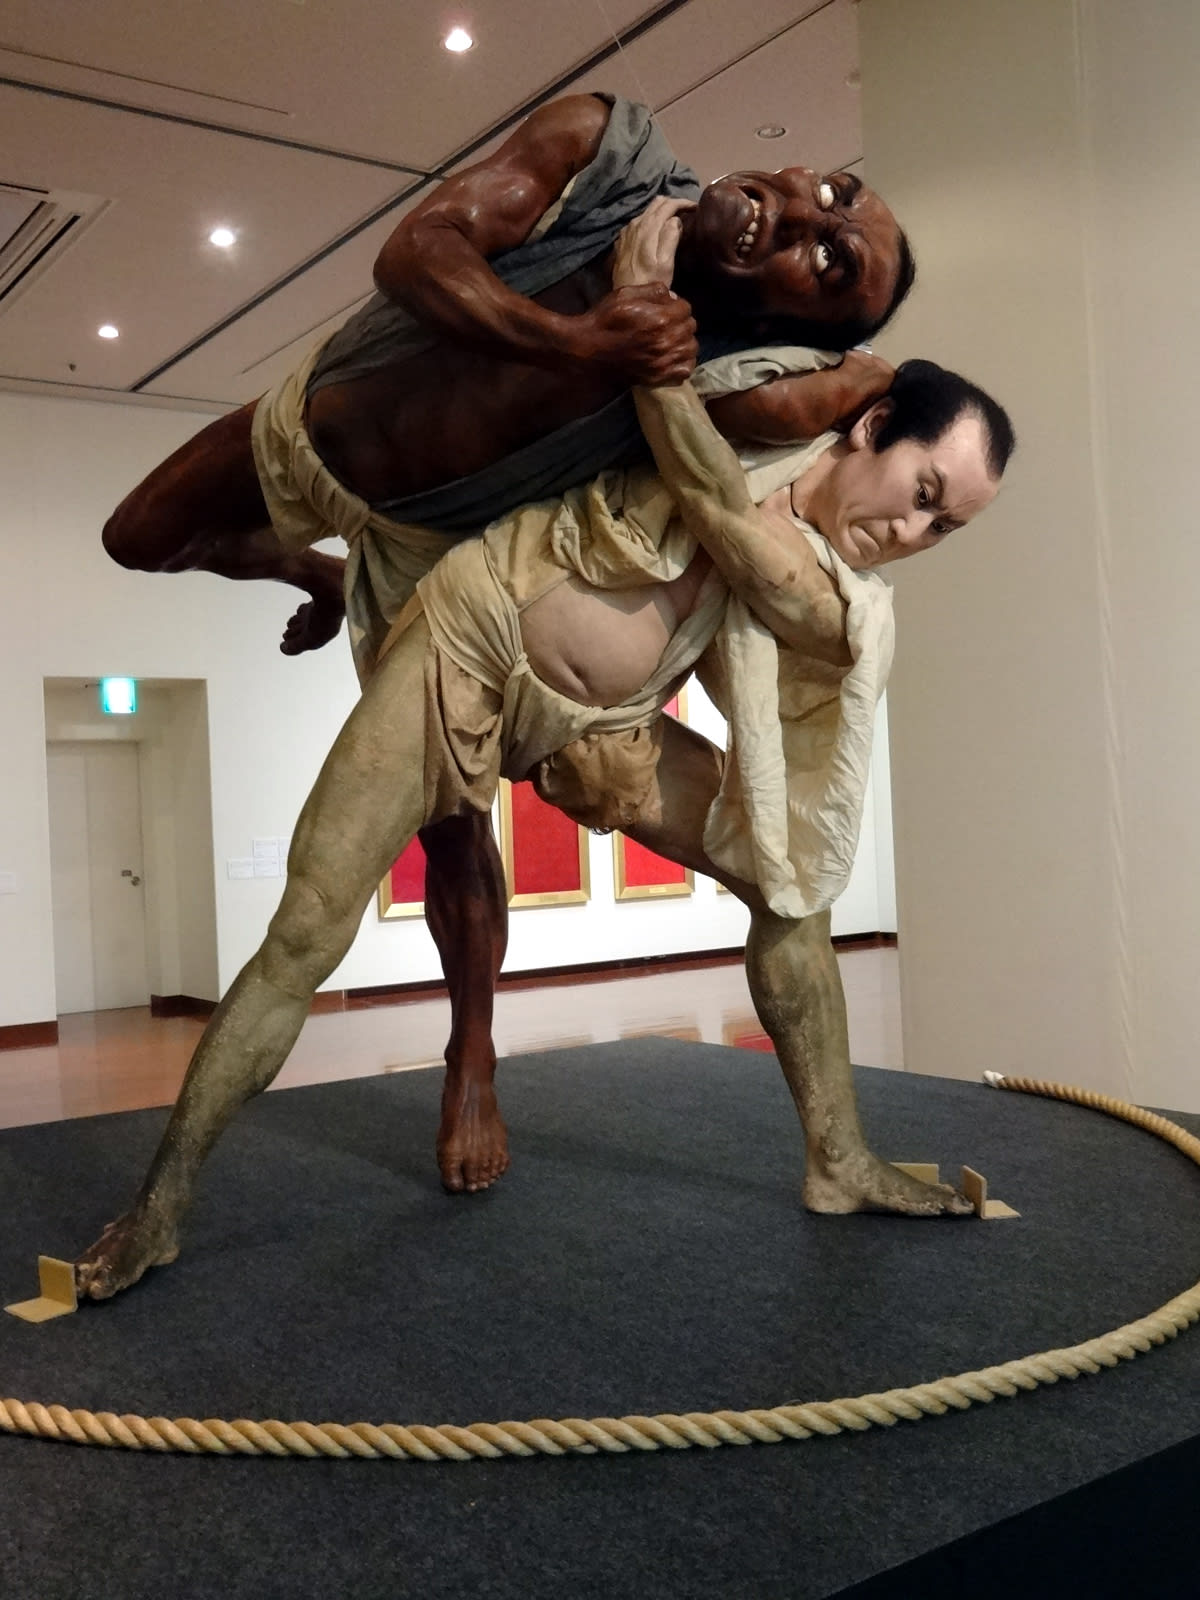 相撲は日本の芸能の原点 徒然なか話